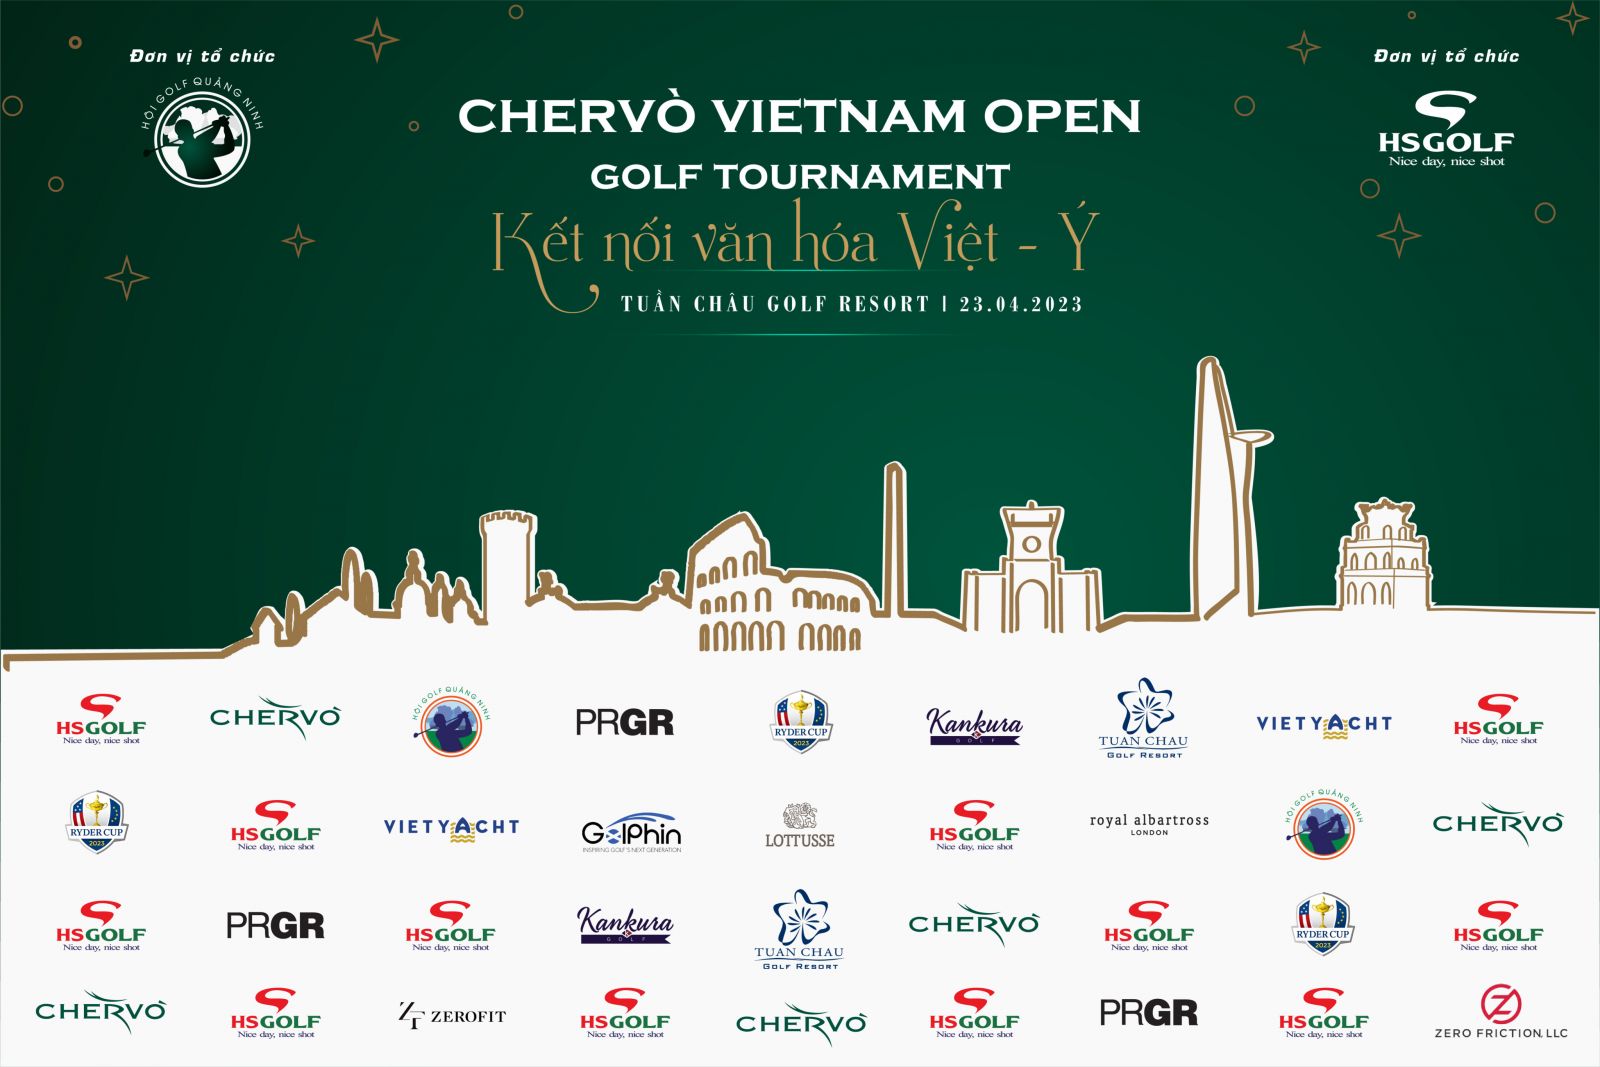 HS Golf phối hợp cùng Hội Golf Quảng Ninh tổ chức giải Chervo Vietnam Open Championship 2023 